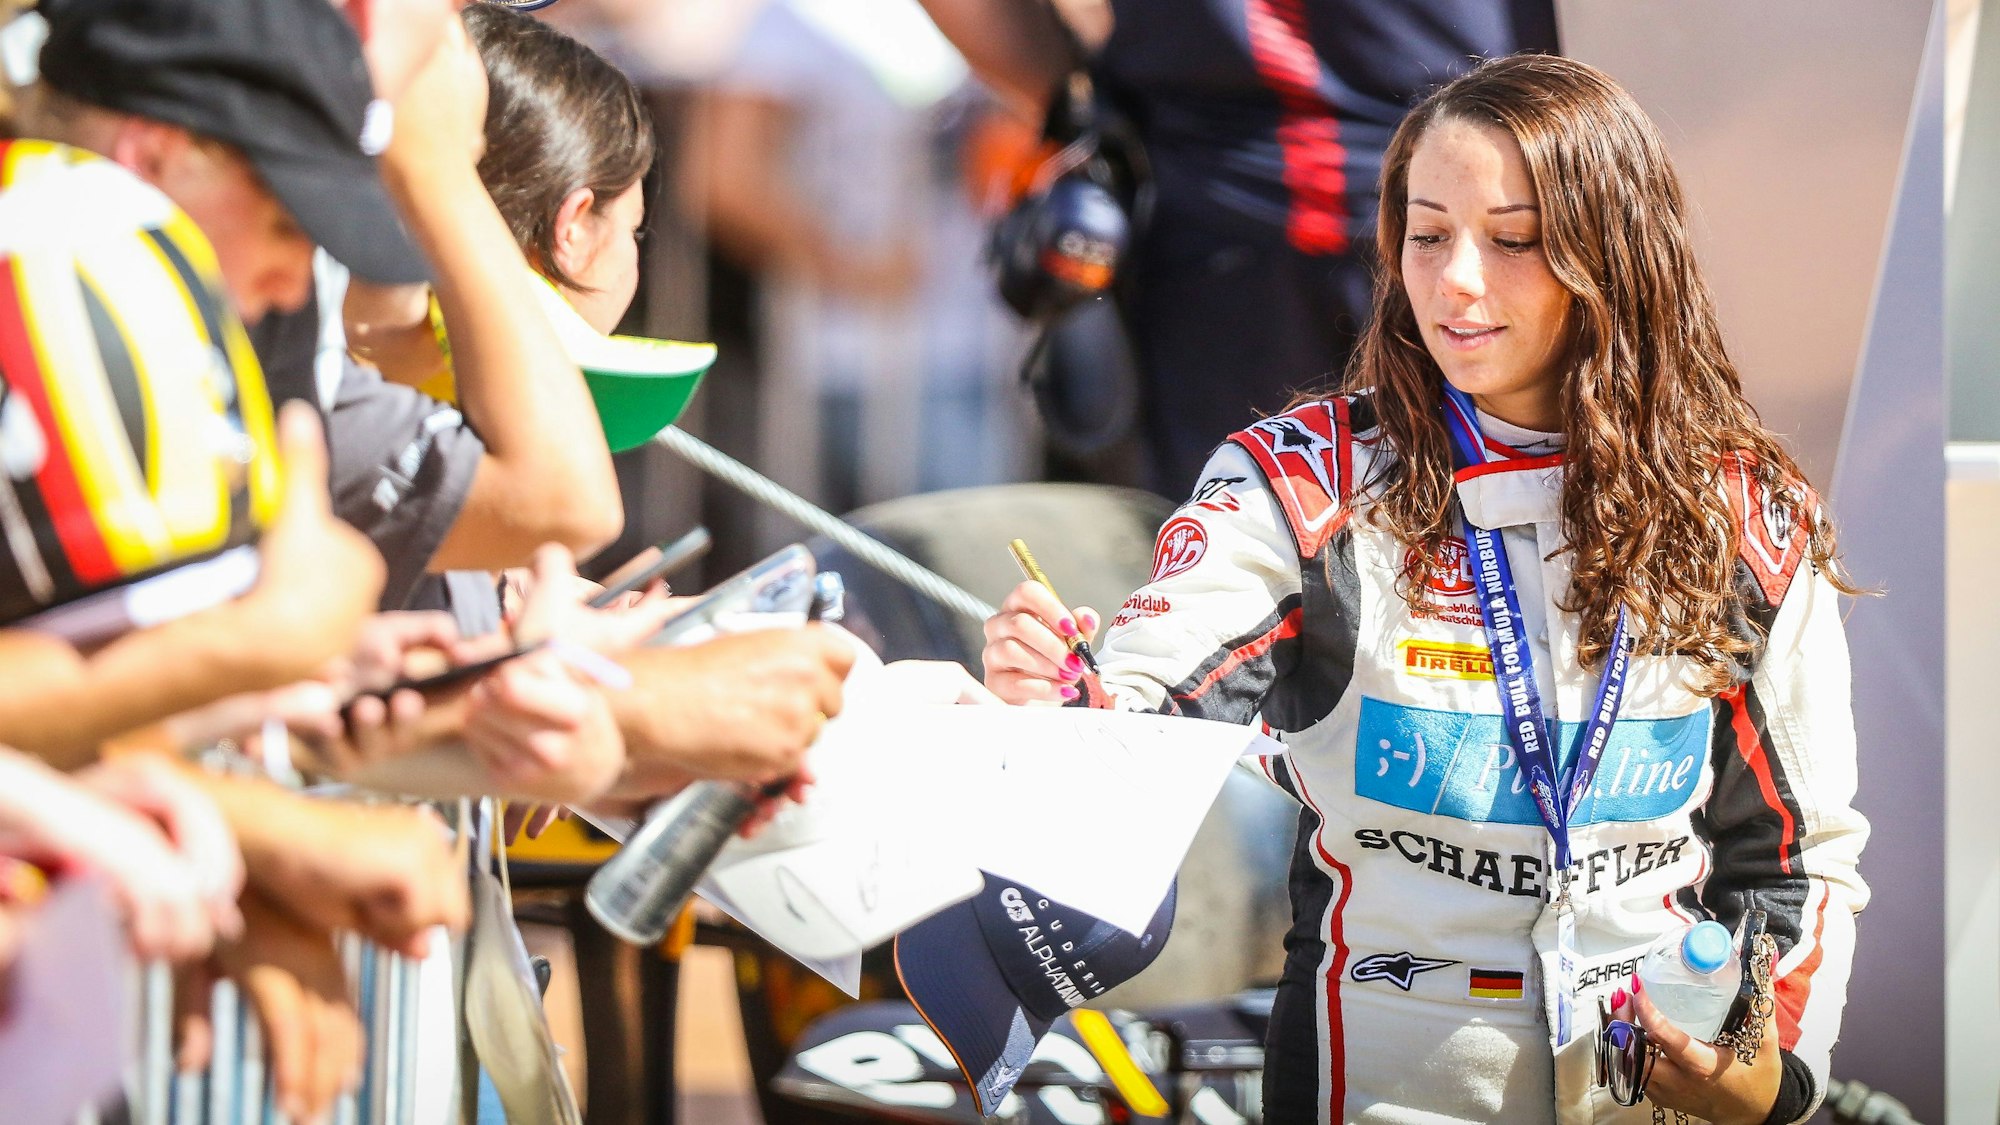 Rennfahrerin Carrie Schreiner schreibt am Nürburgring Autogramme.